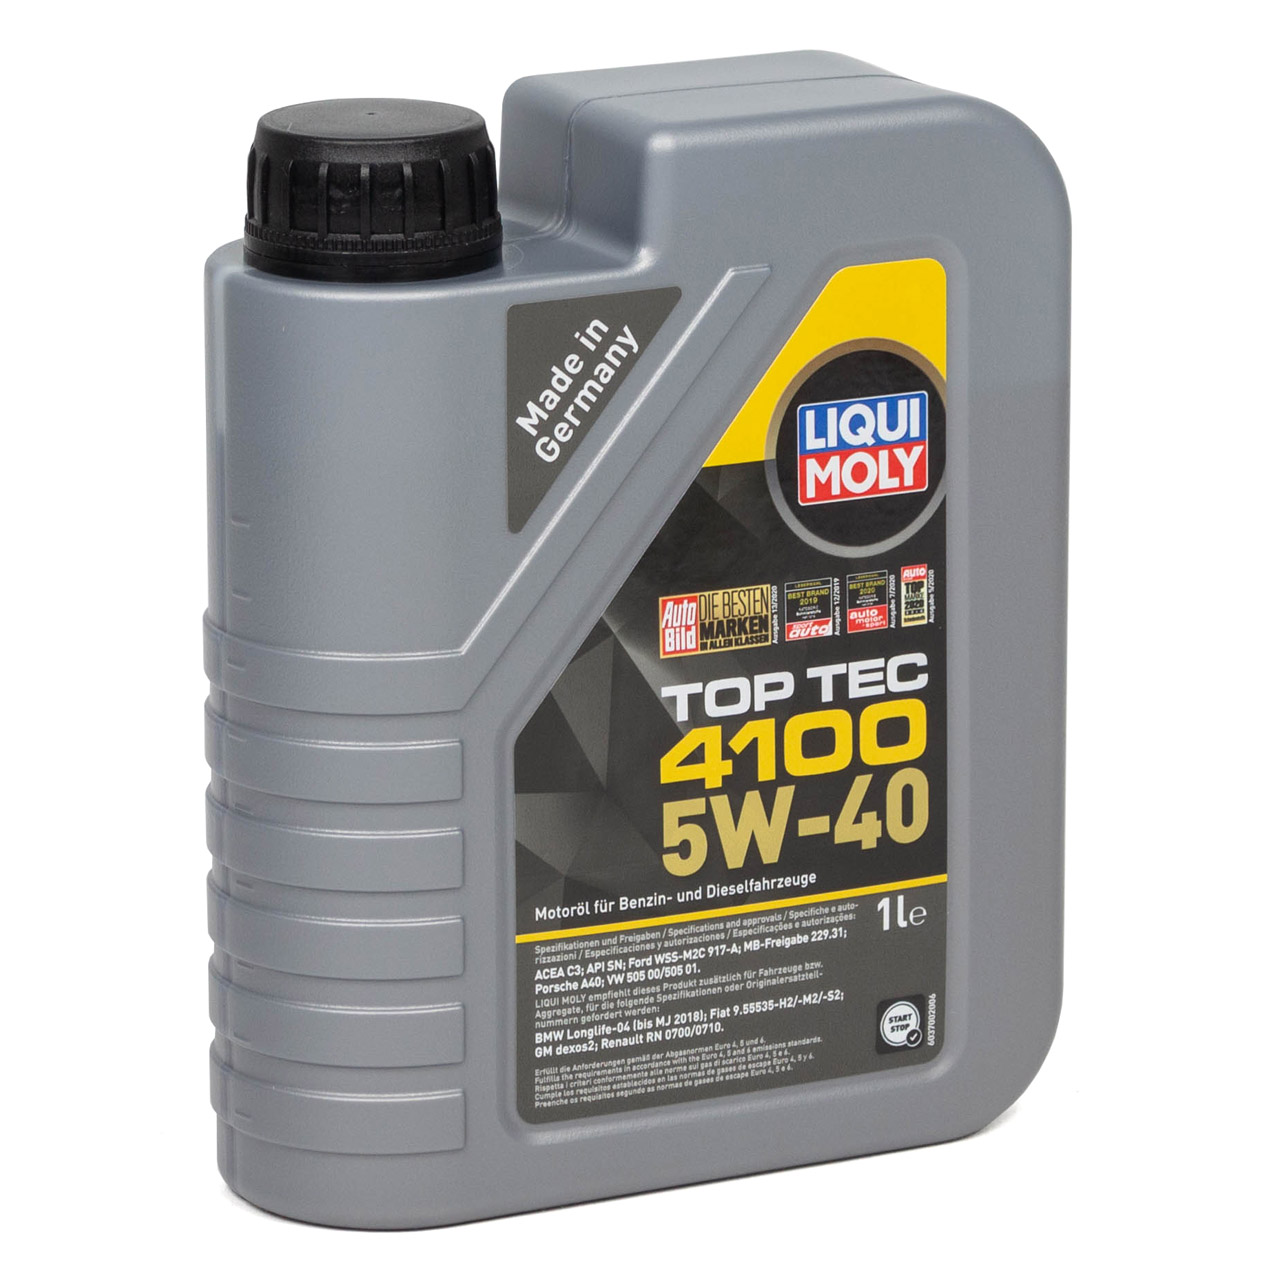 6L 6 Liter LIQUI MOLY Motoröl Öl TOP TEC 4100 5W40 5W-40 MB 229.31 VW 505.00/01